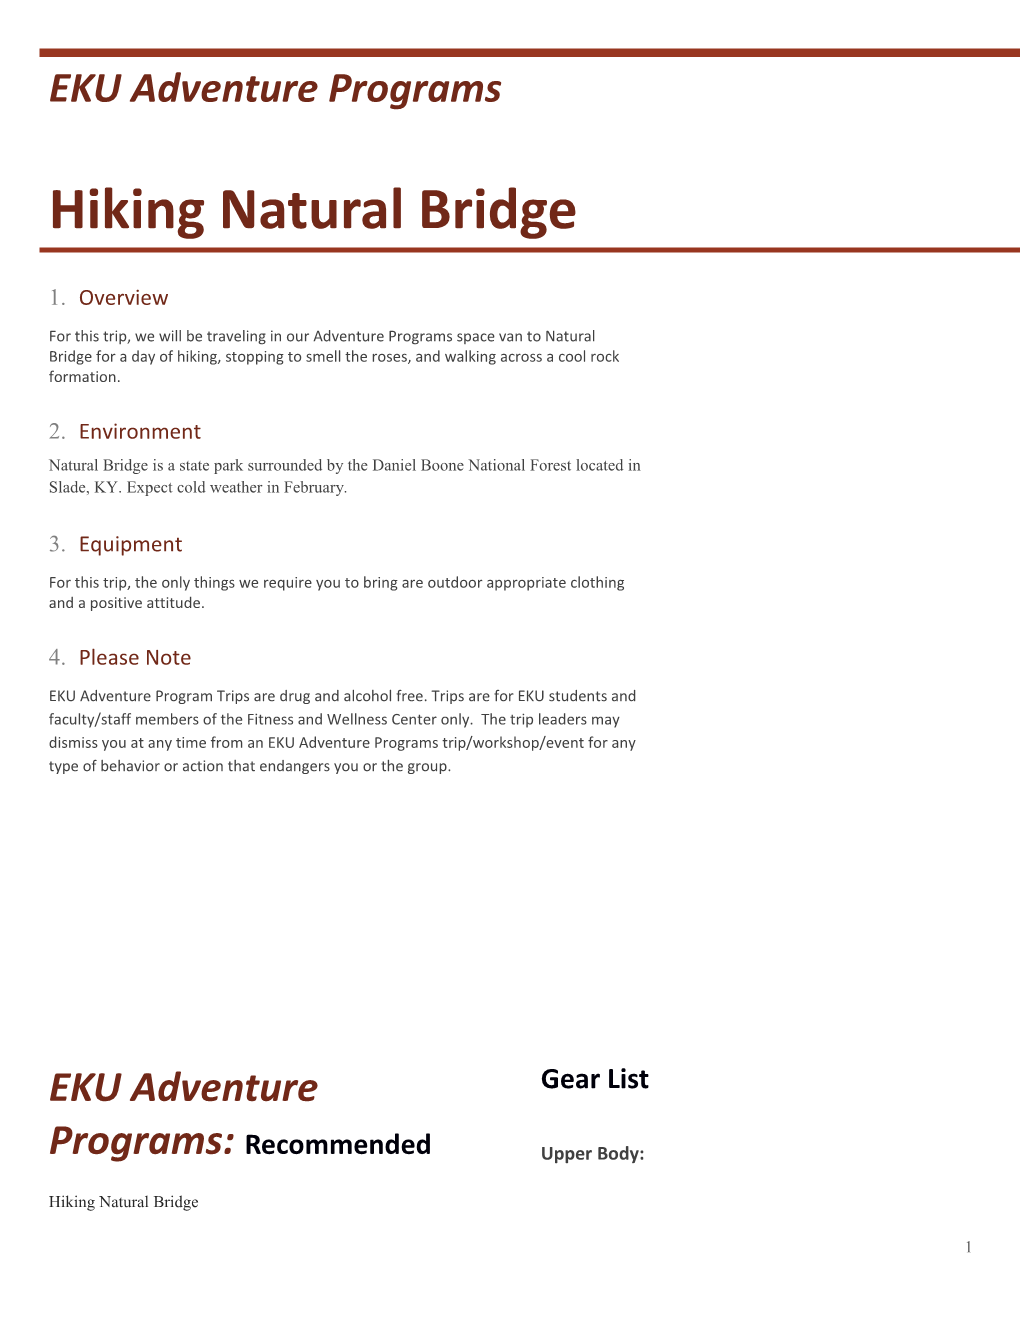 Hiking Natural Bridge